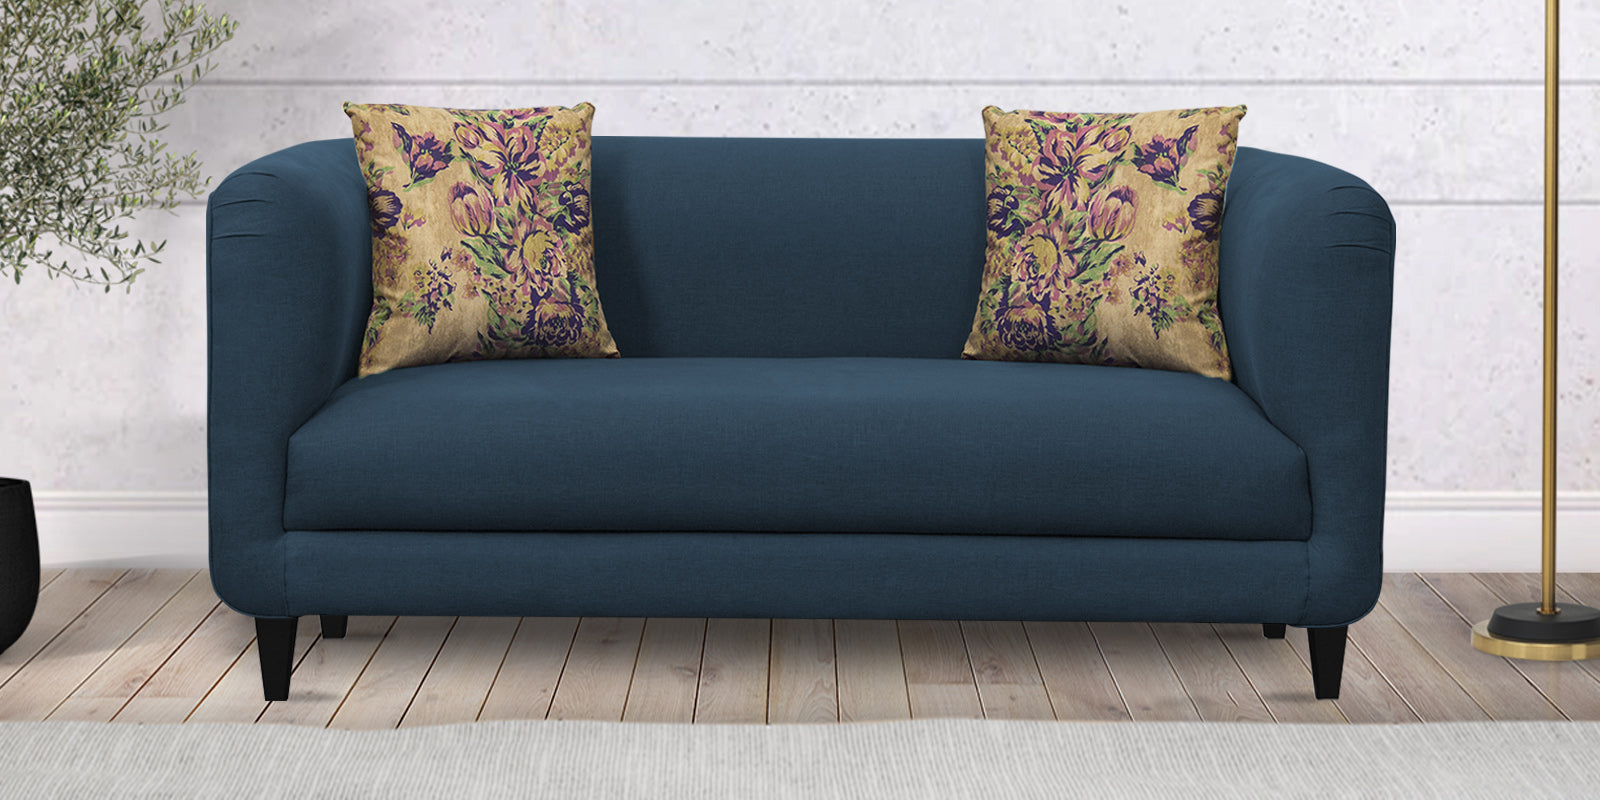 Niki Fabric 2 Seater Sofa in Light Blue Colour